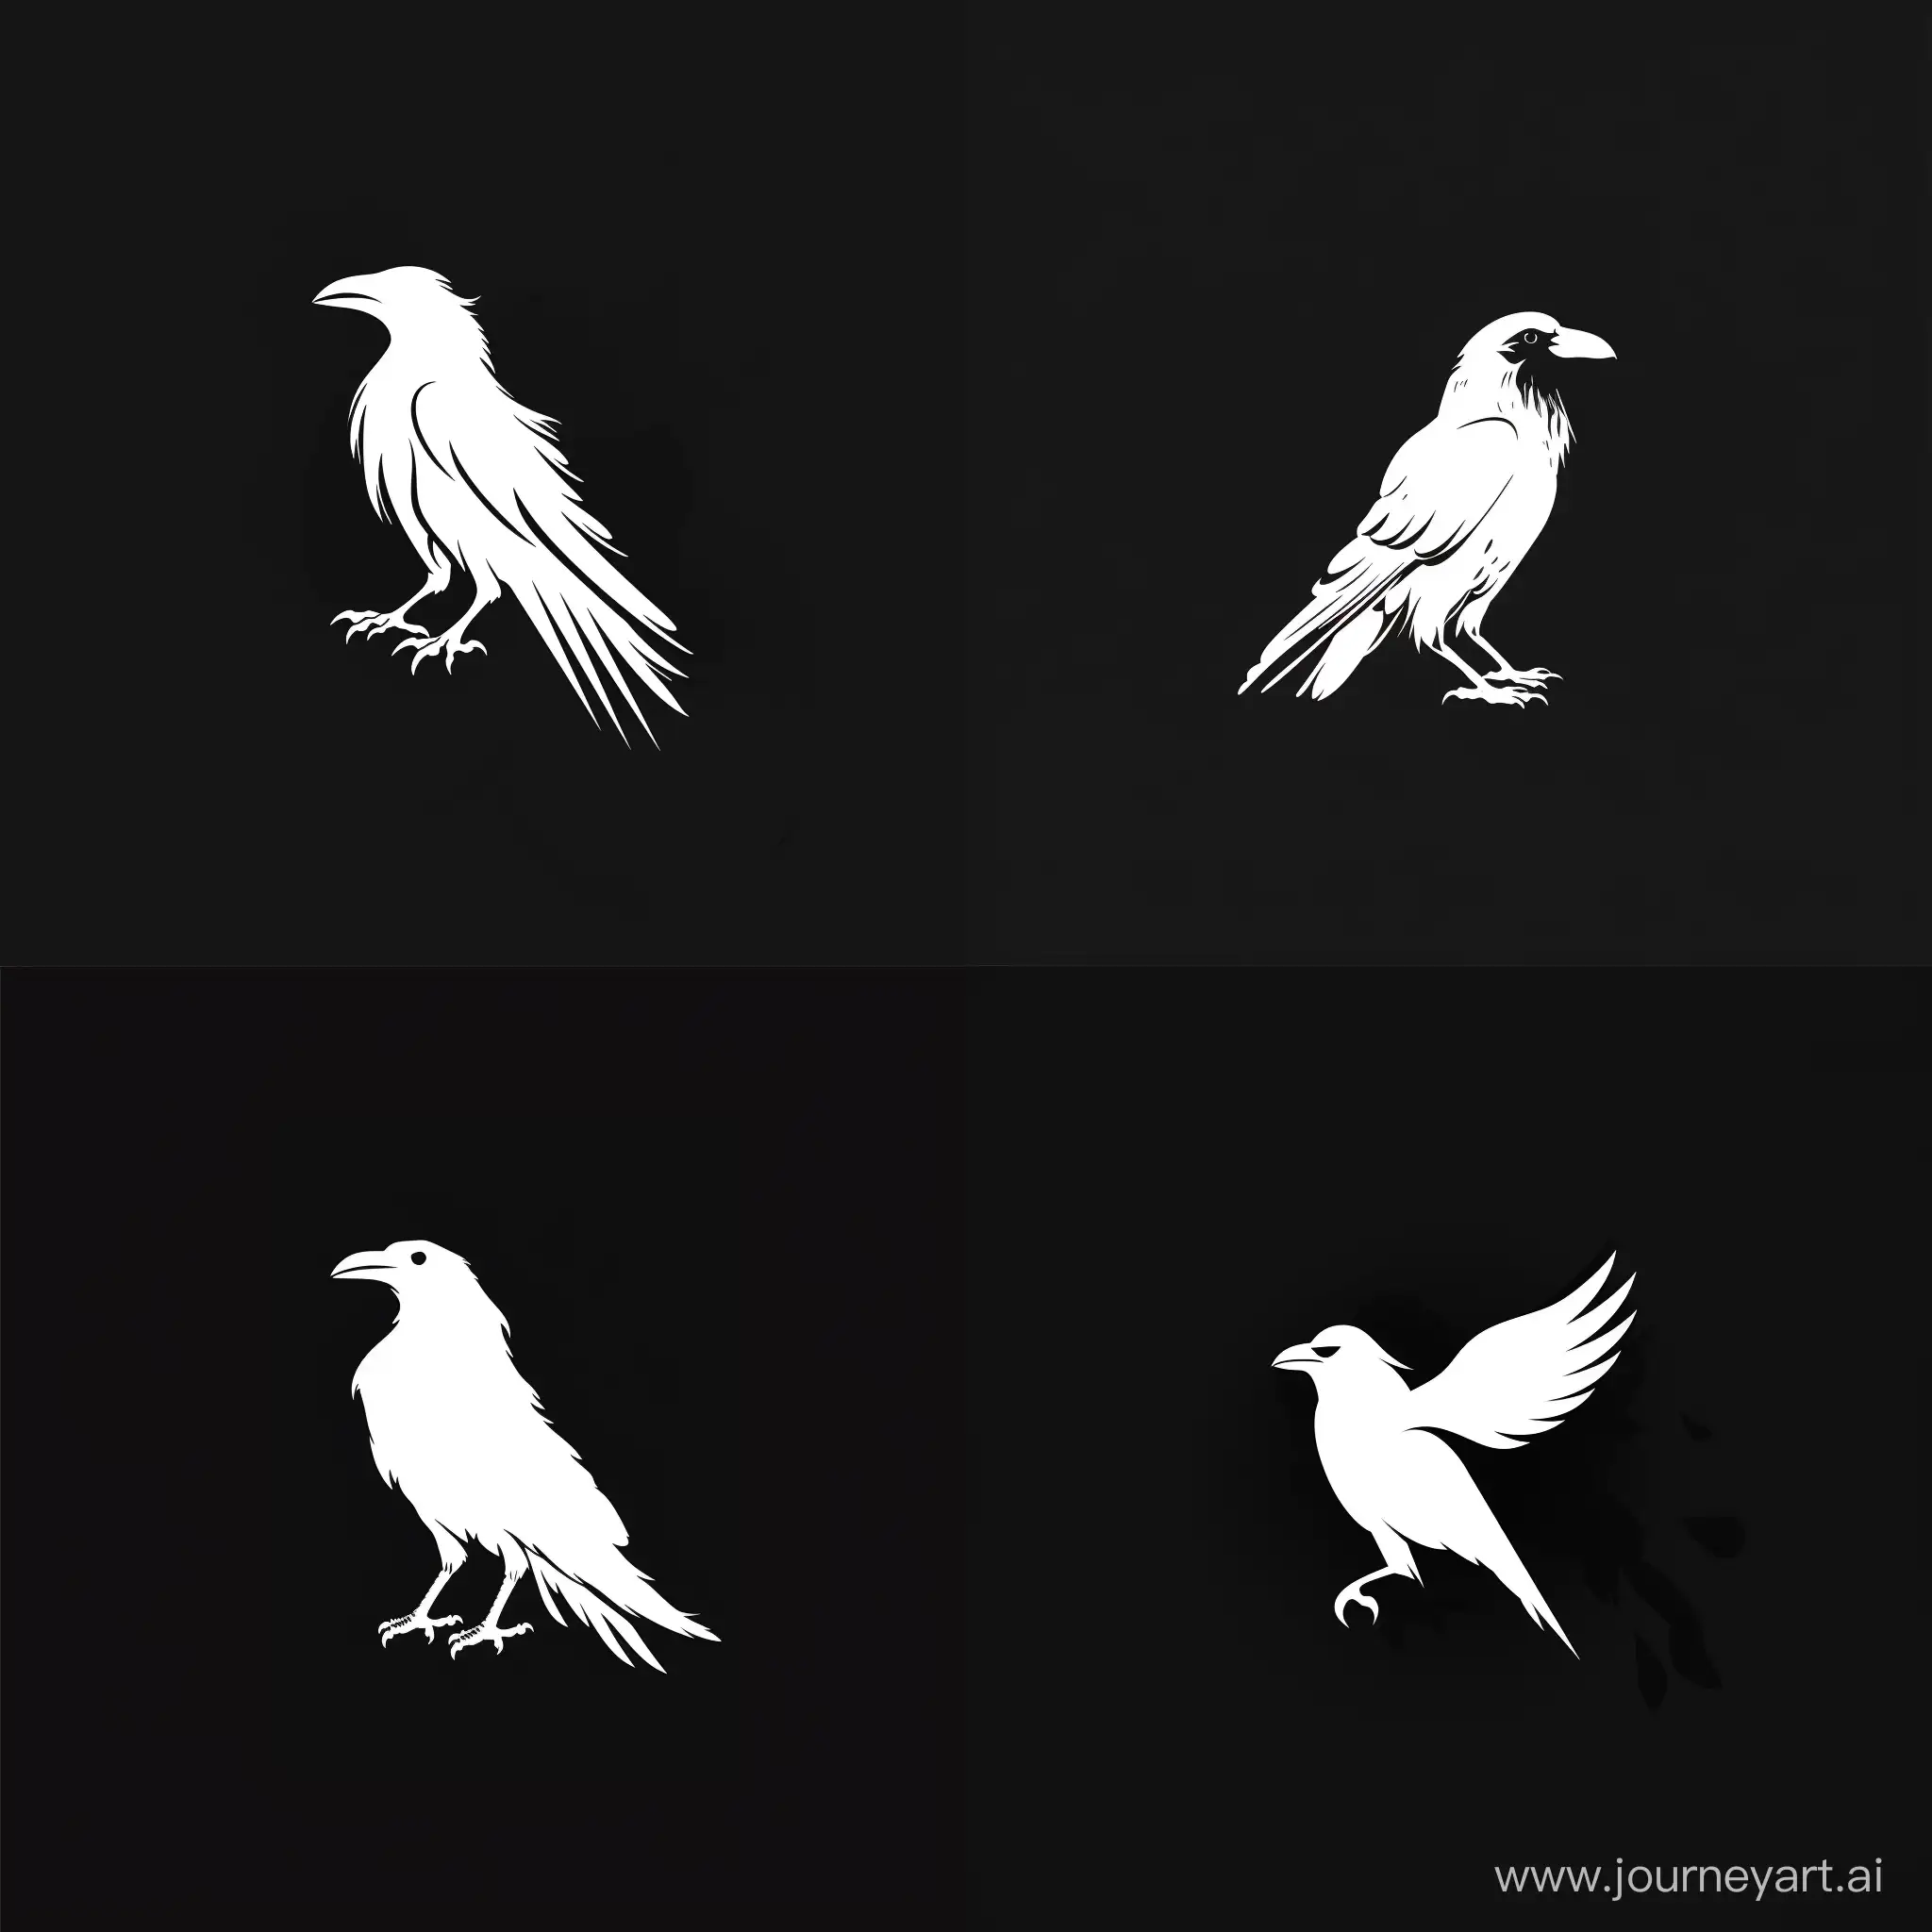 Логотип в жанре фэнтези, белая ворона среди черных 